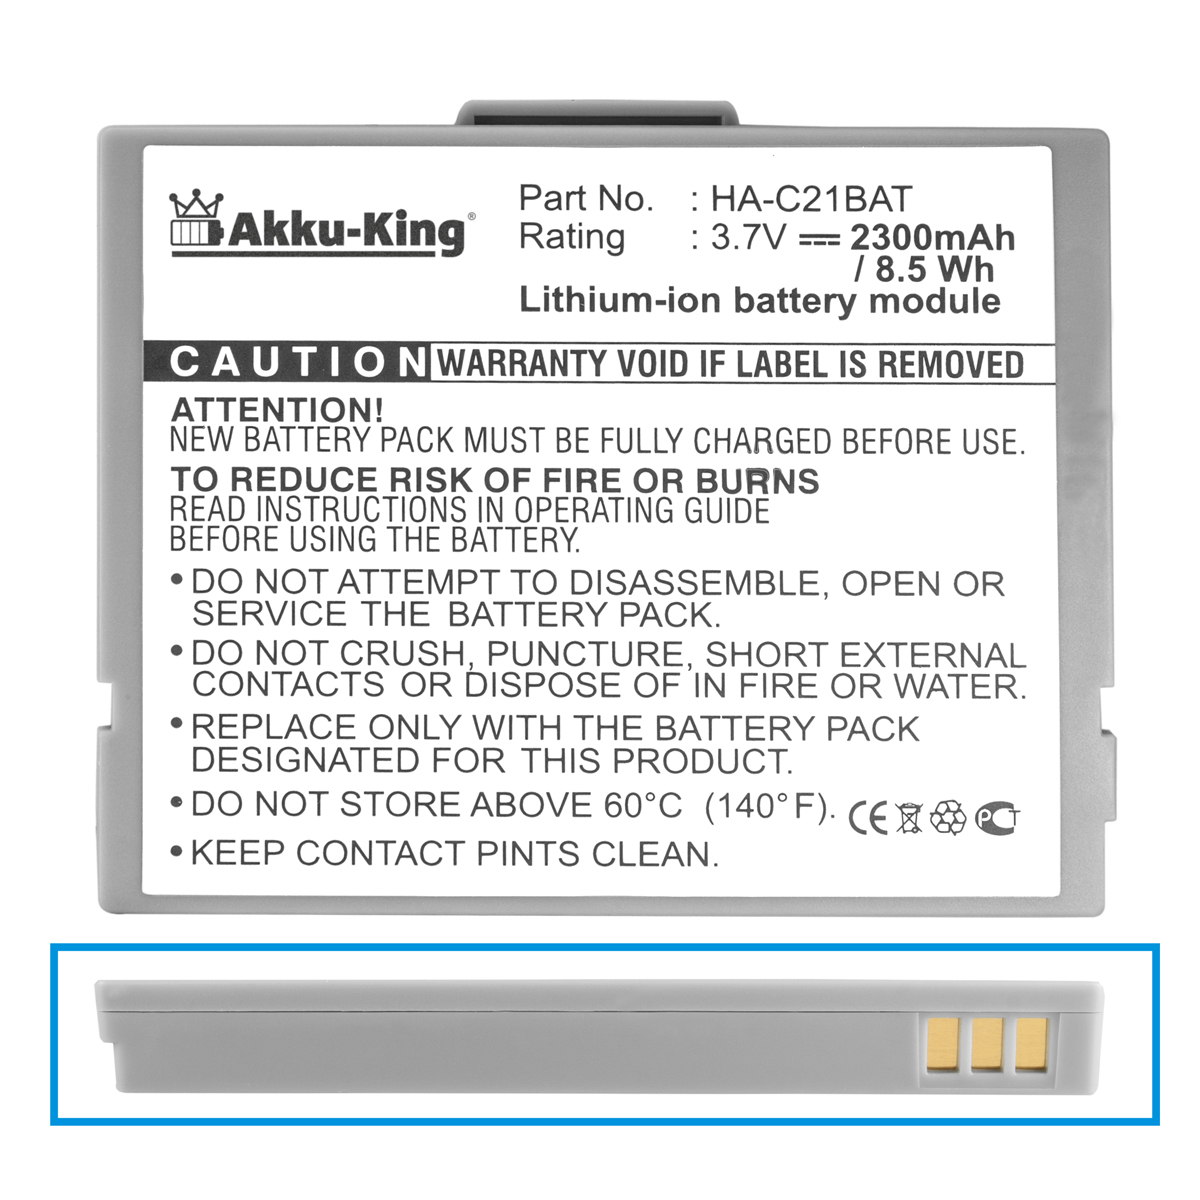 AKKU-KING Akku kompatibel Volt, Li-Ion Casio 3.7 HA-C21BAT Geräte-Akku, mit 2300mAh